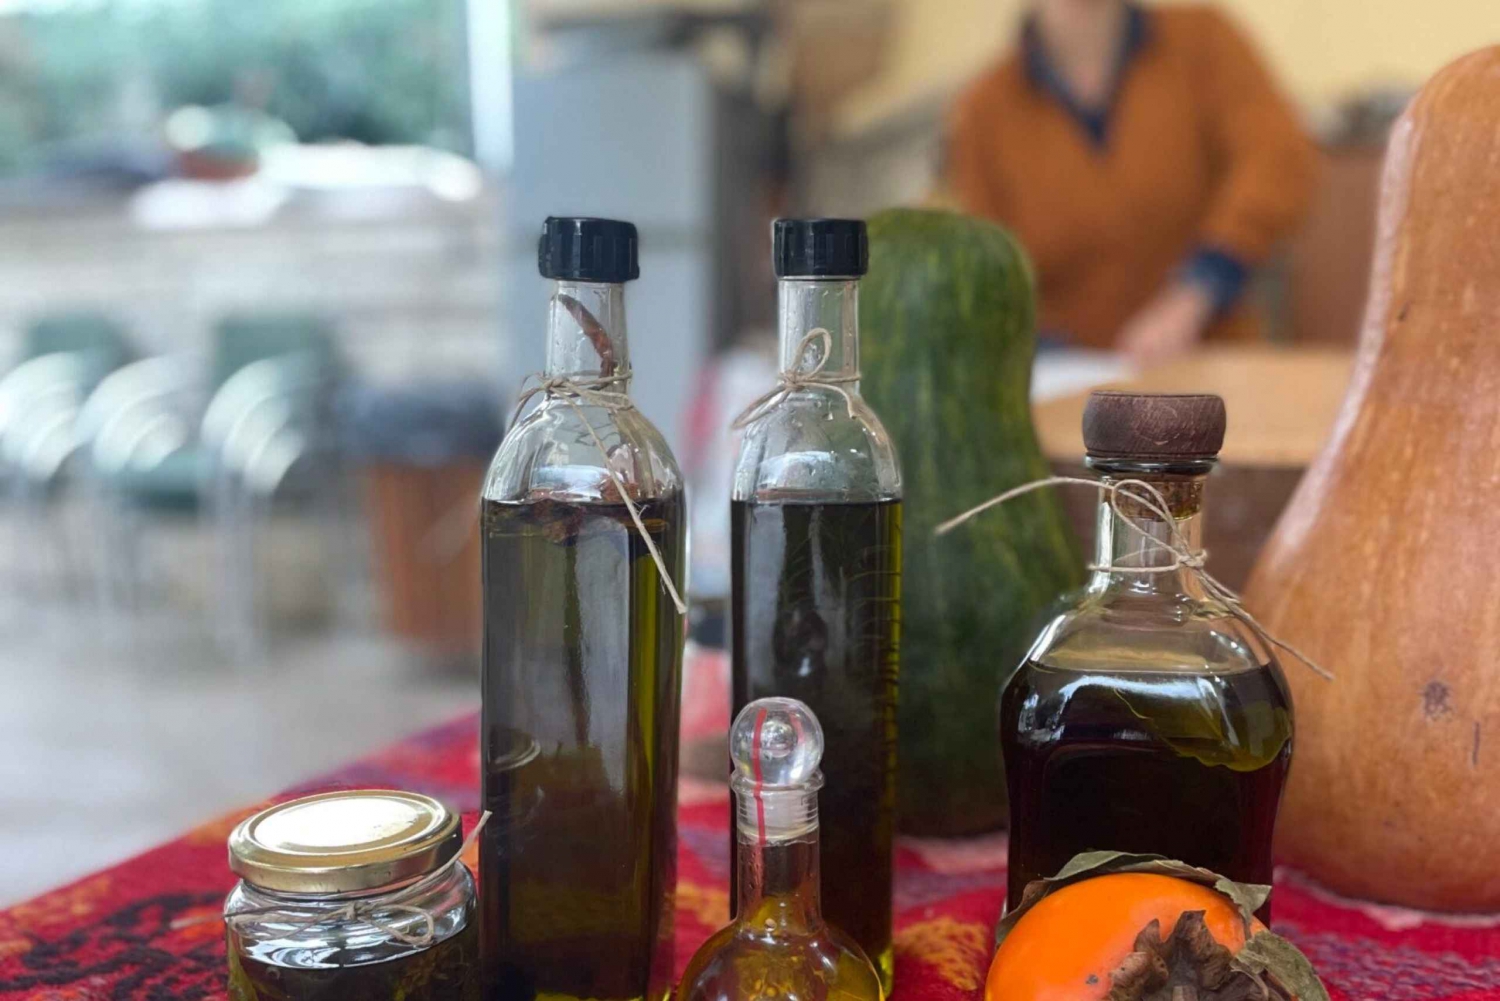 Cours de boulangerie au levain - Dégustation d'huile d'olive